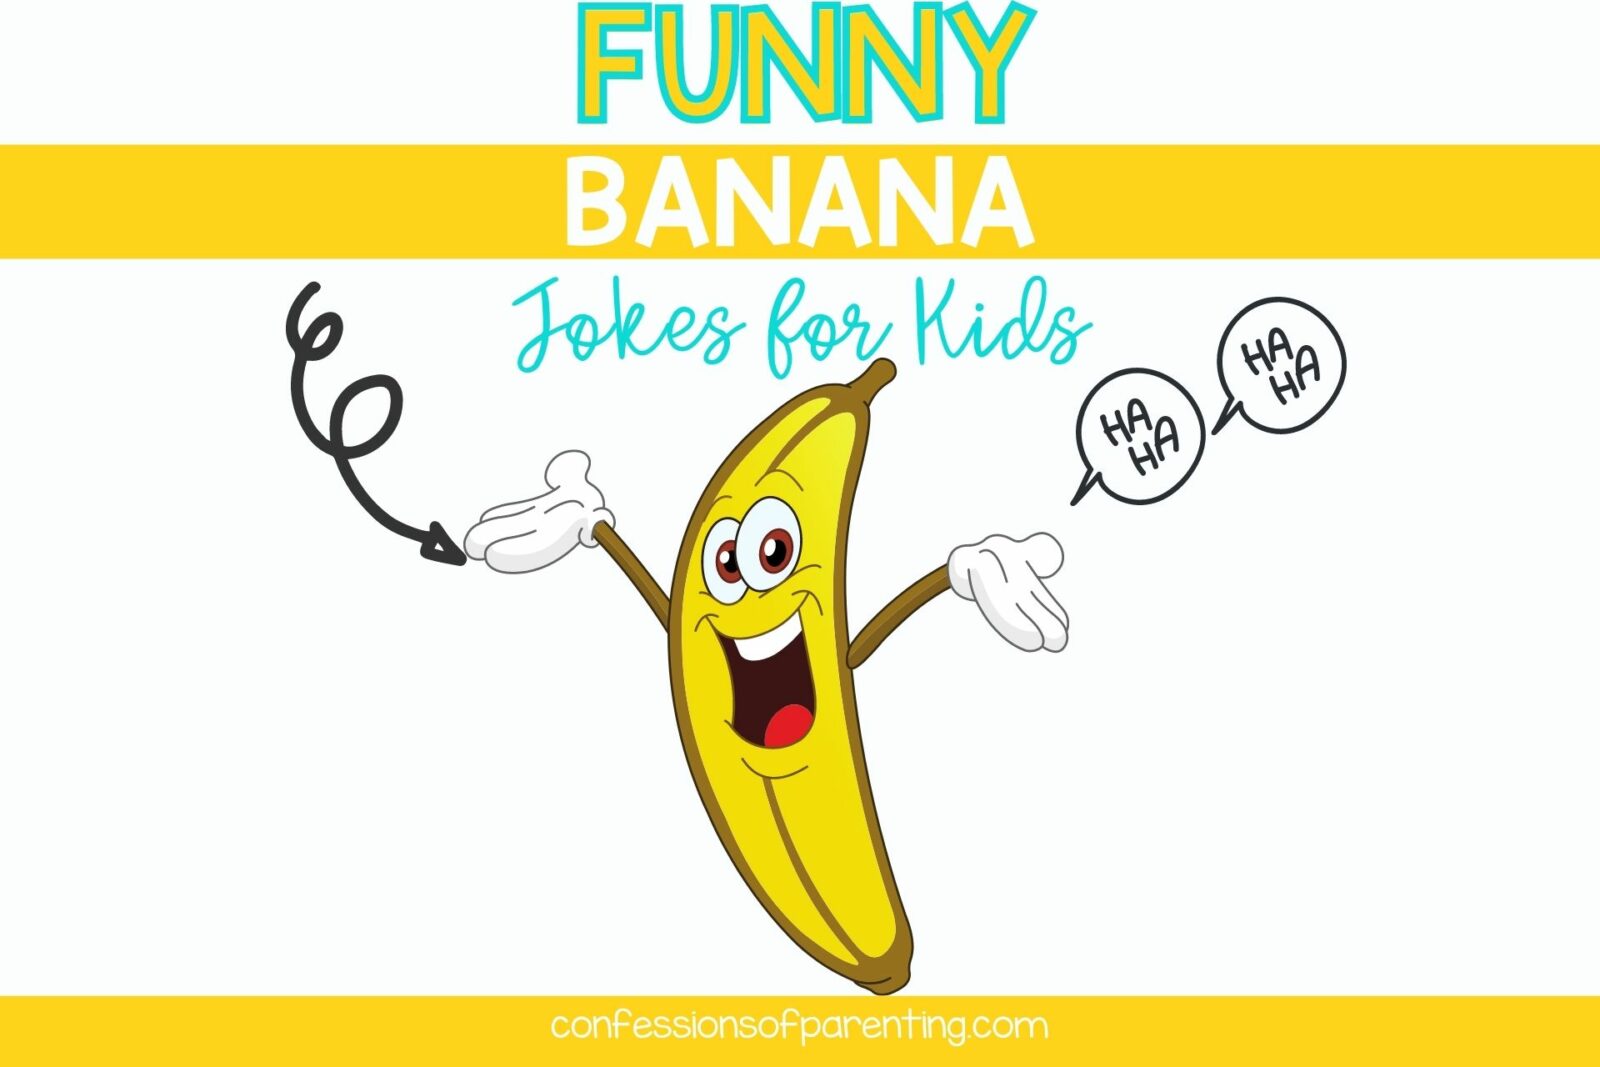 banana jokes for kids